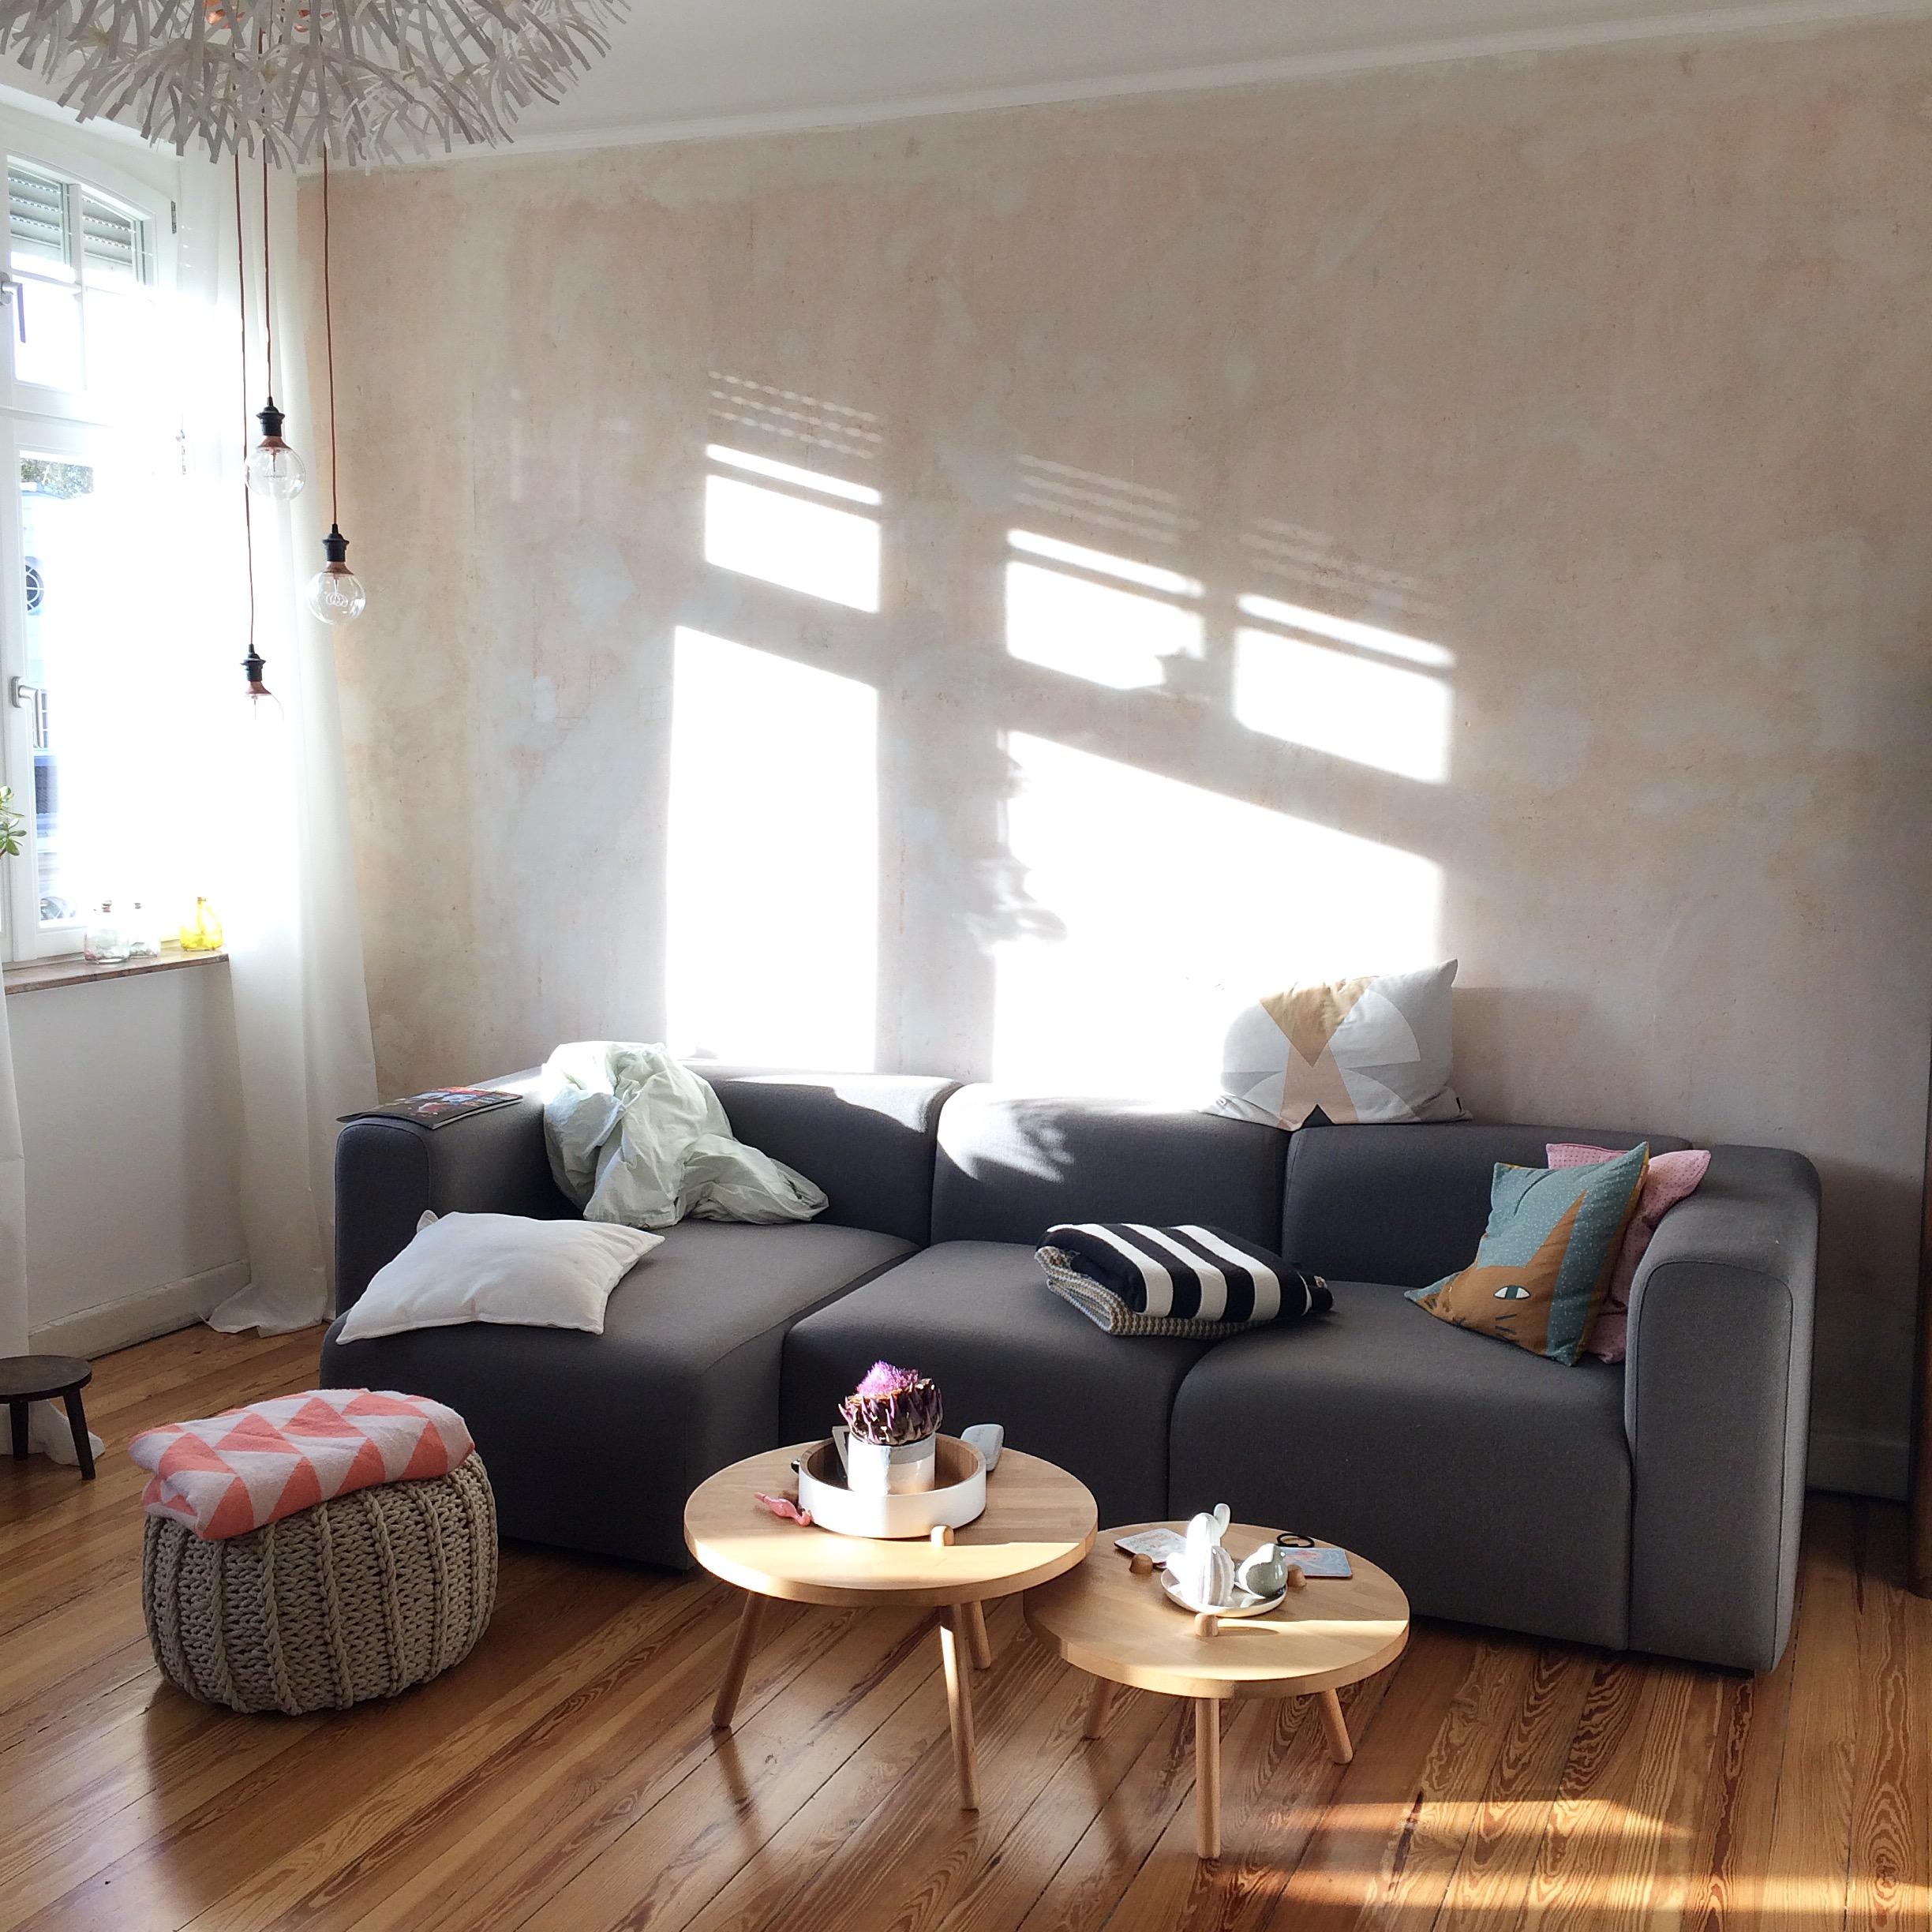 Herbstsonnenschein #interior #livingroom #altbau #living #Scandinavian #wohnen #wohnzimmer #licht #scandistyle